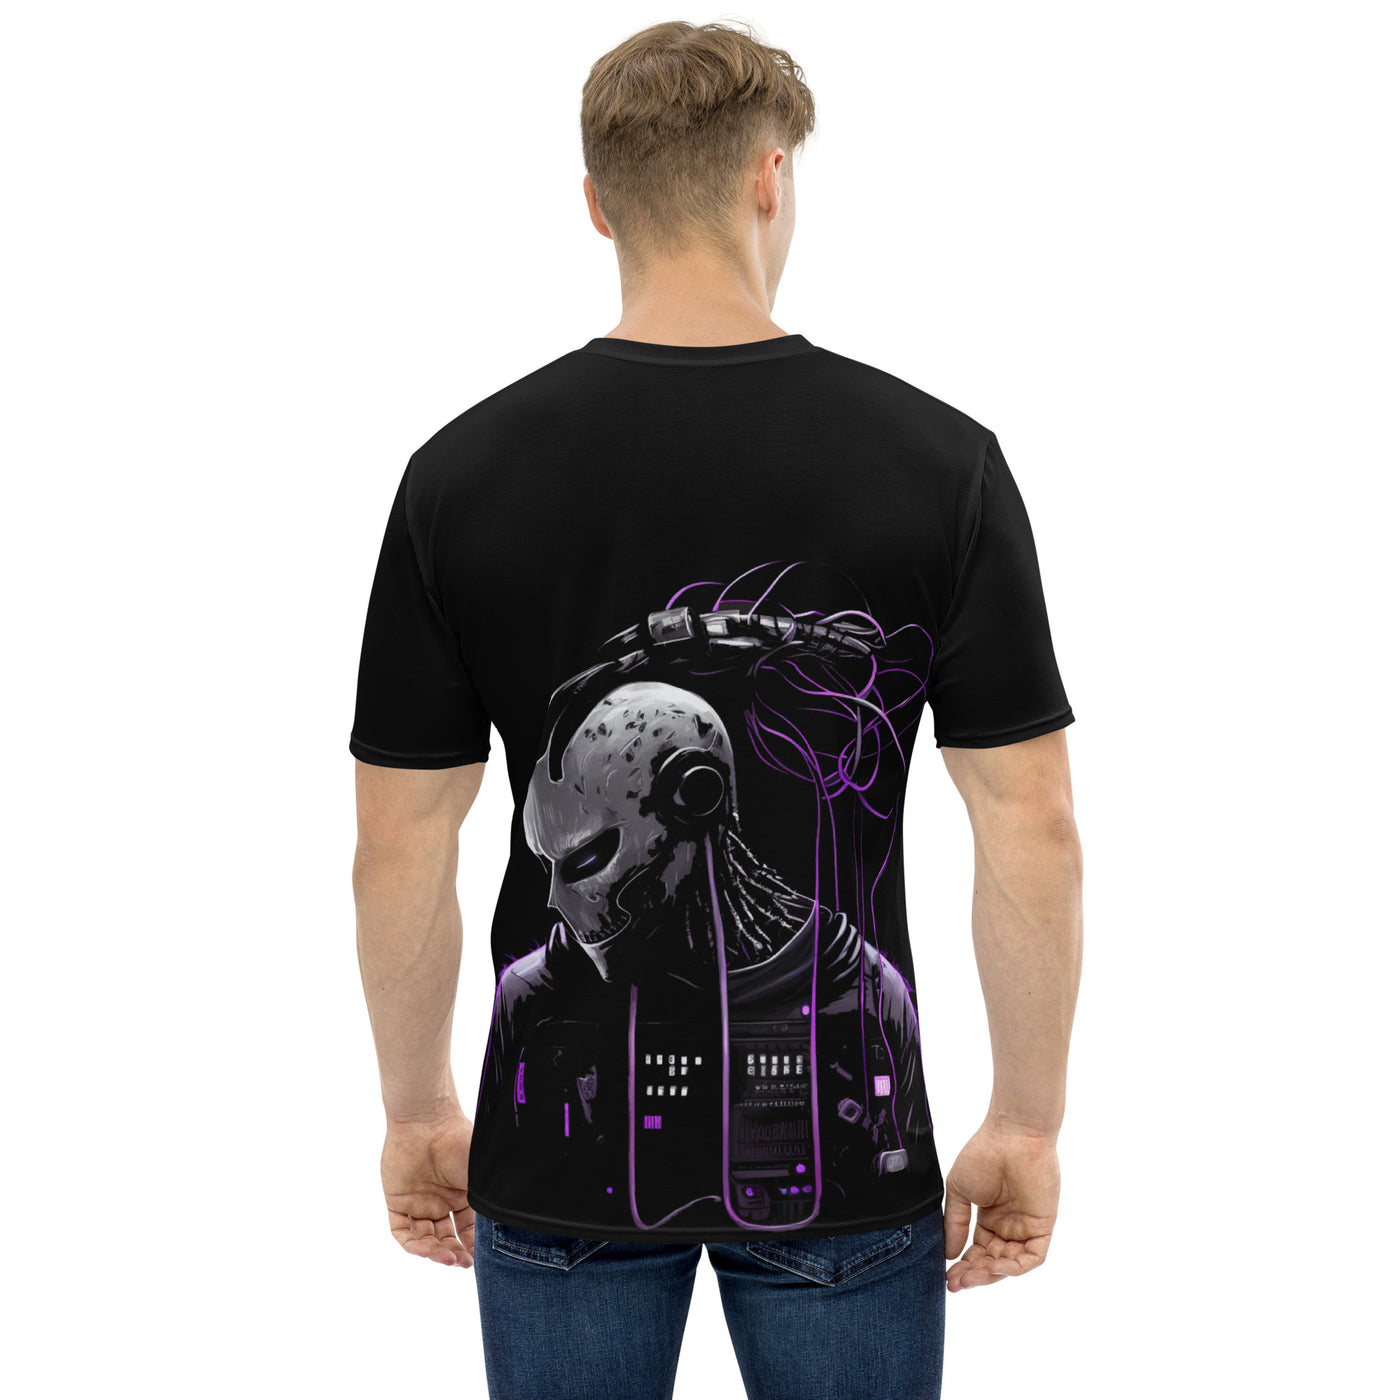 Cyberware assassin v47 - Men's t-shirt (back print)